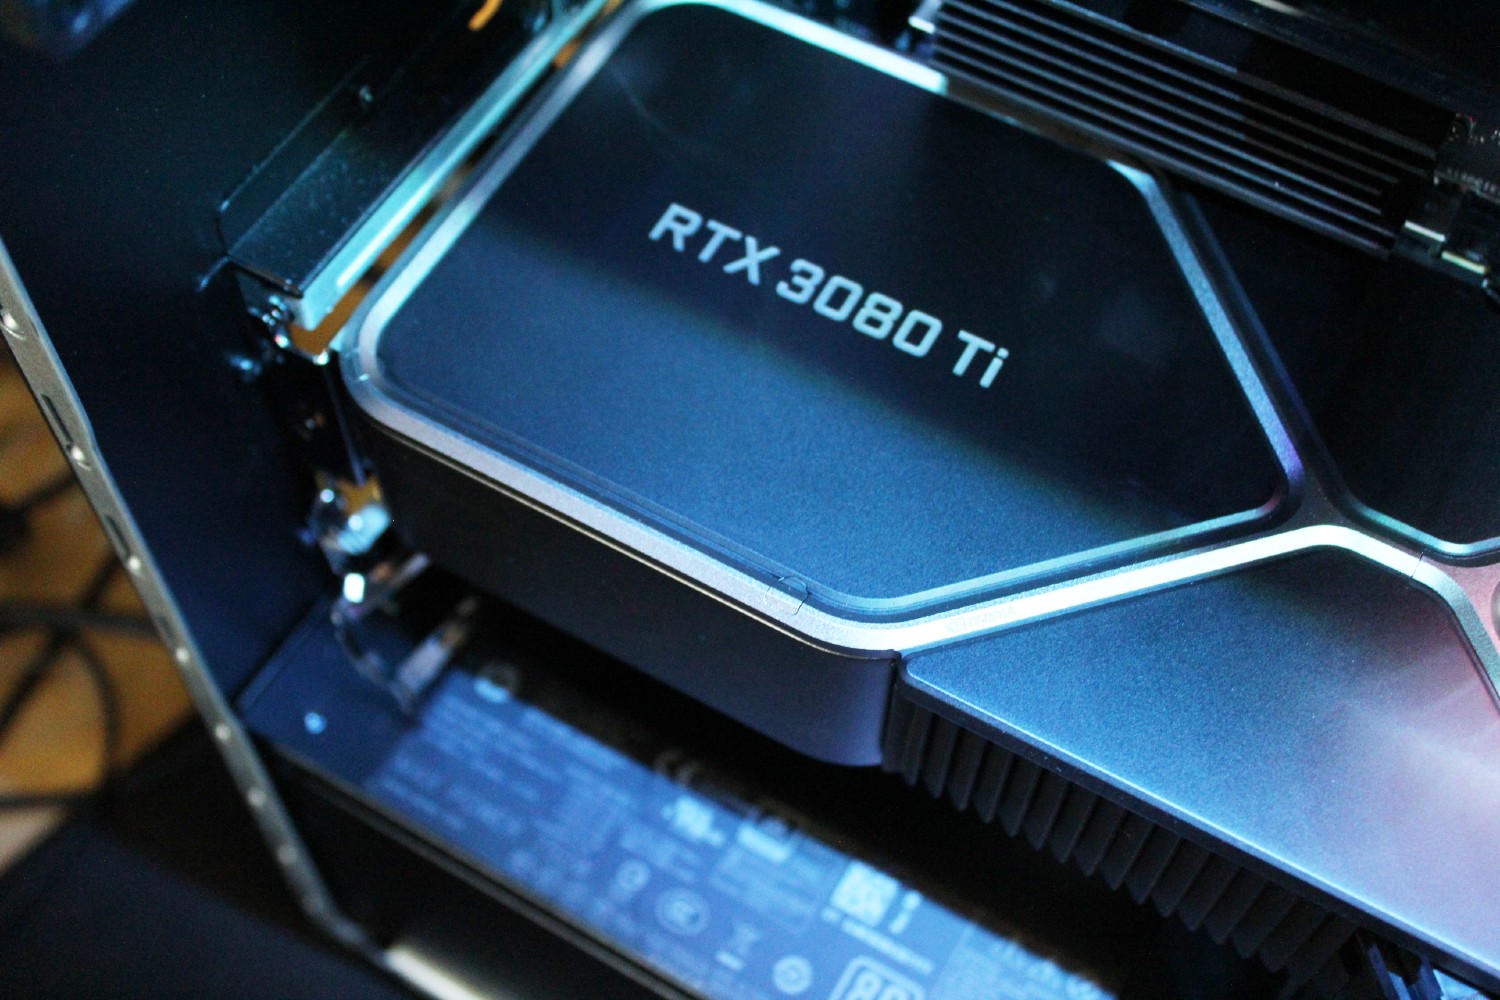 RTX 4060 Ti 16GB launches July 18 amid desperate price cuts